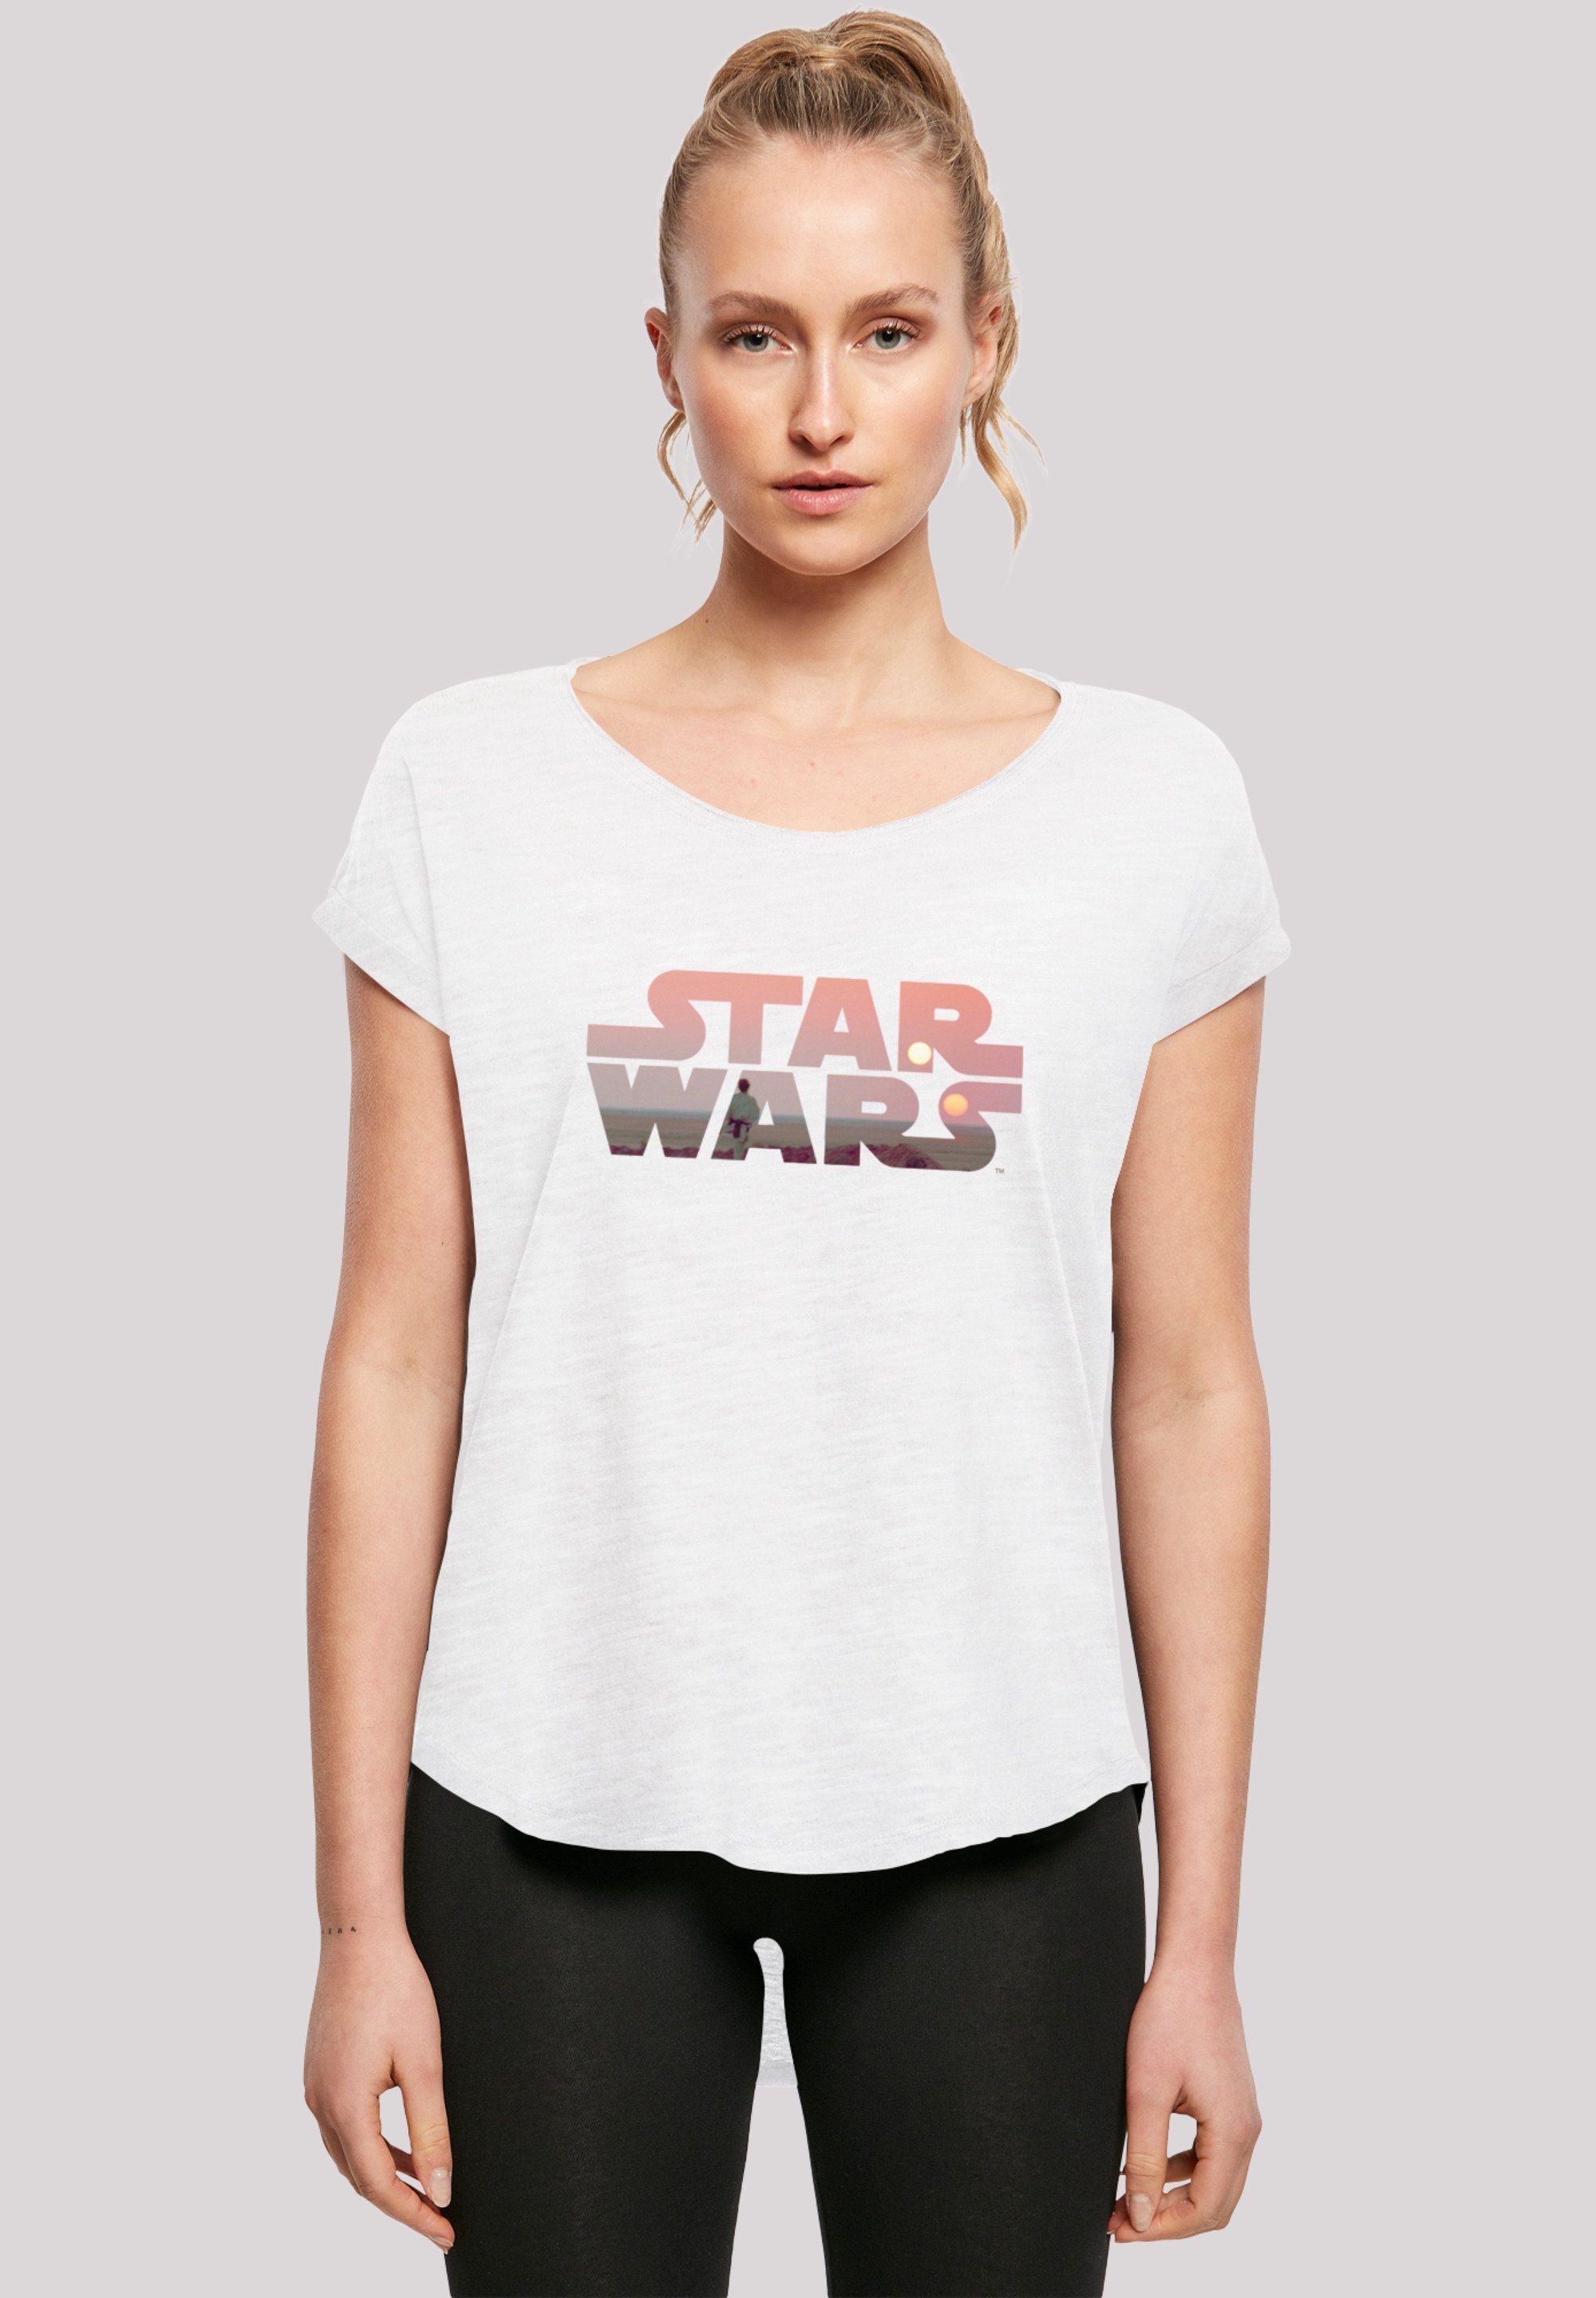 weicher Wars Tatooine Logo Star T-Shirt mit Tragekomfort Sehr F4NT4STIC hohem Baumwollstoff Print,